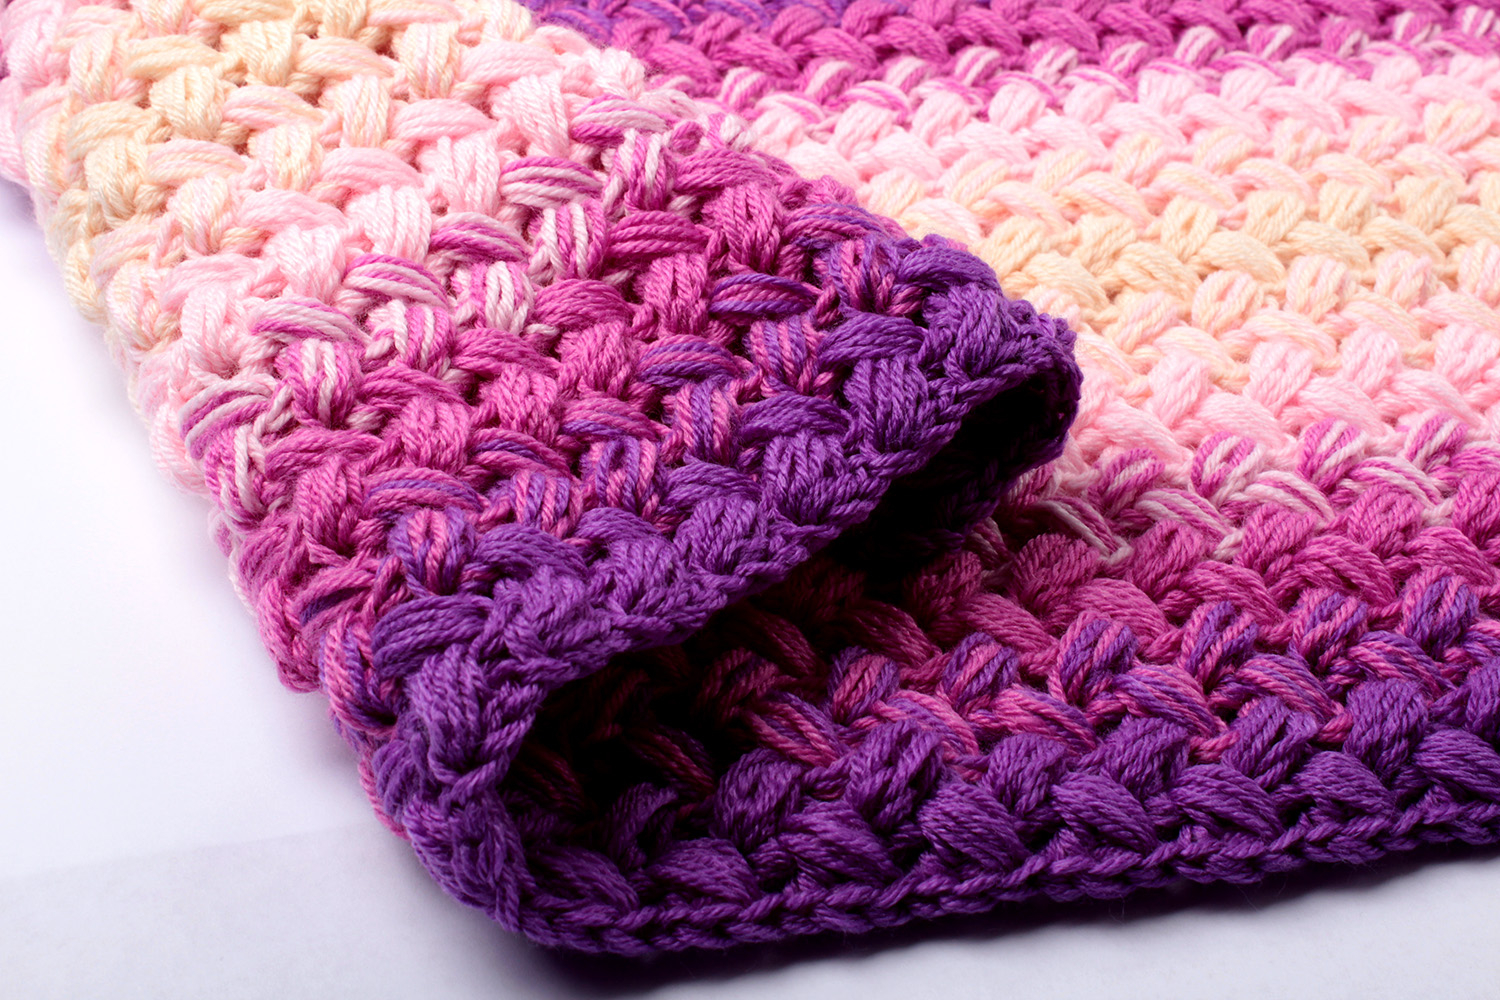 Crochet Zig Zag Pattern Crochet Zig Zag Blanket Pattern Free Yarn Twist